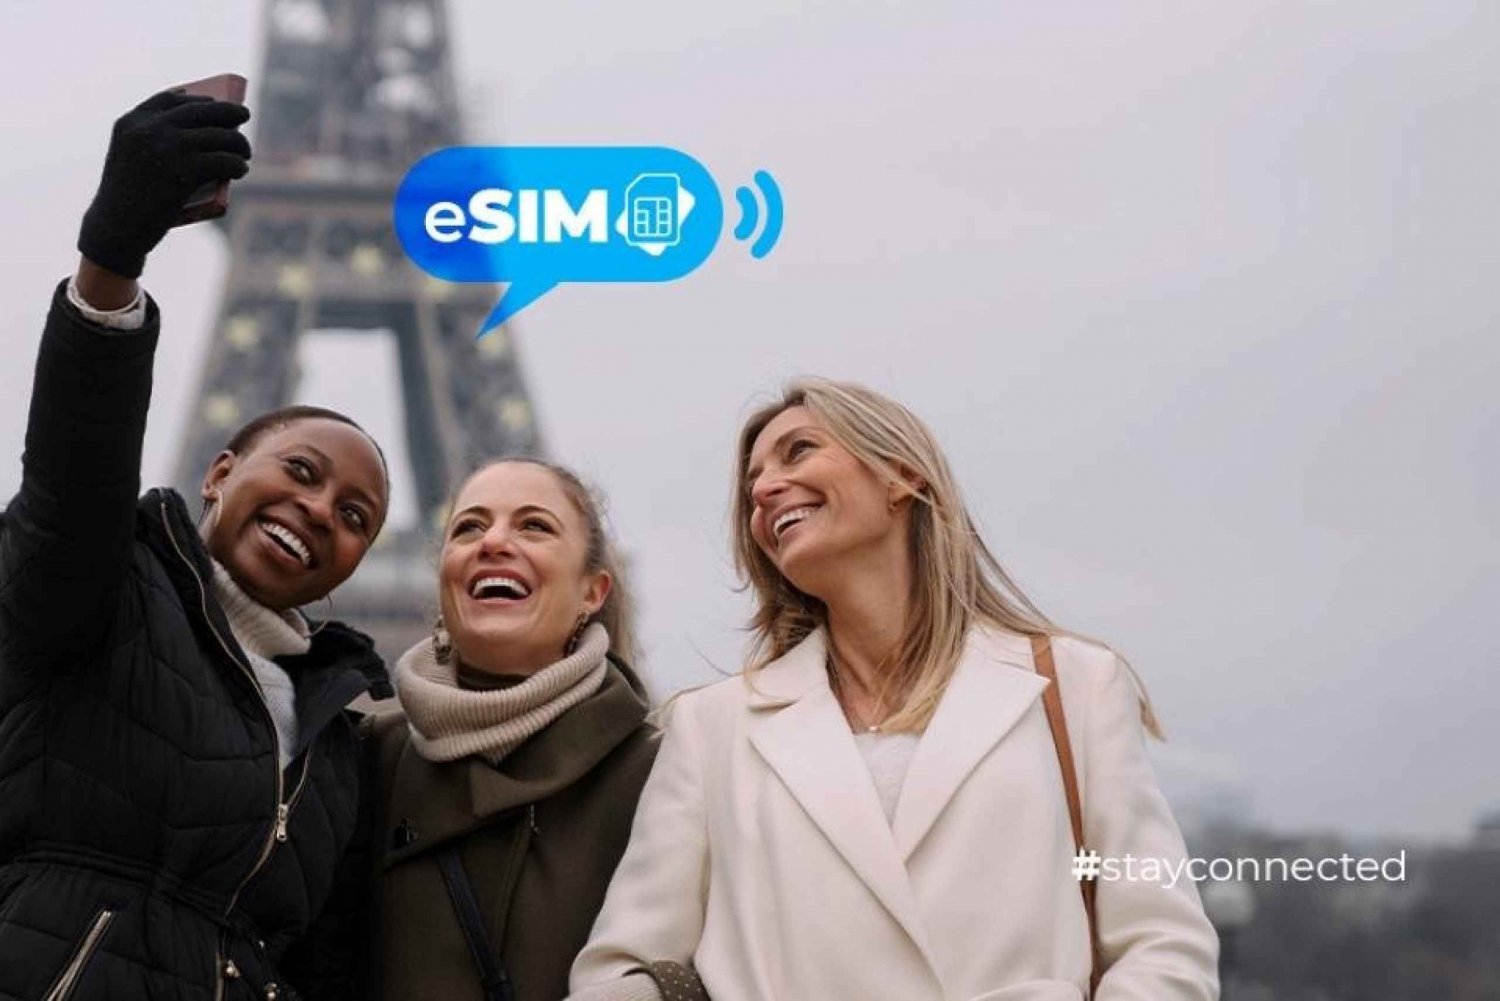 Cannes & Frankreich: Unbegrenztes EU-Internet mit eSIM Mobile Data